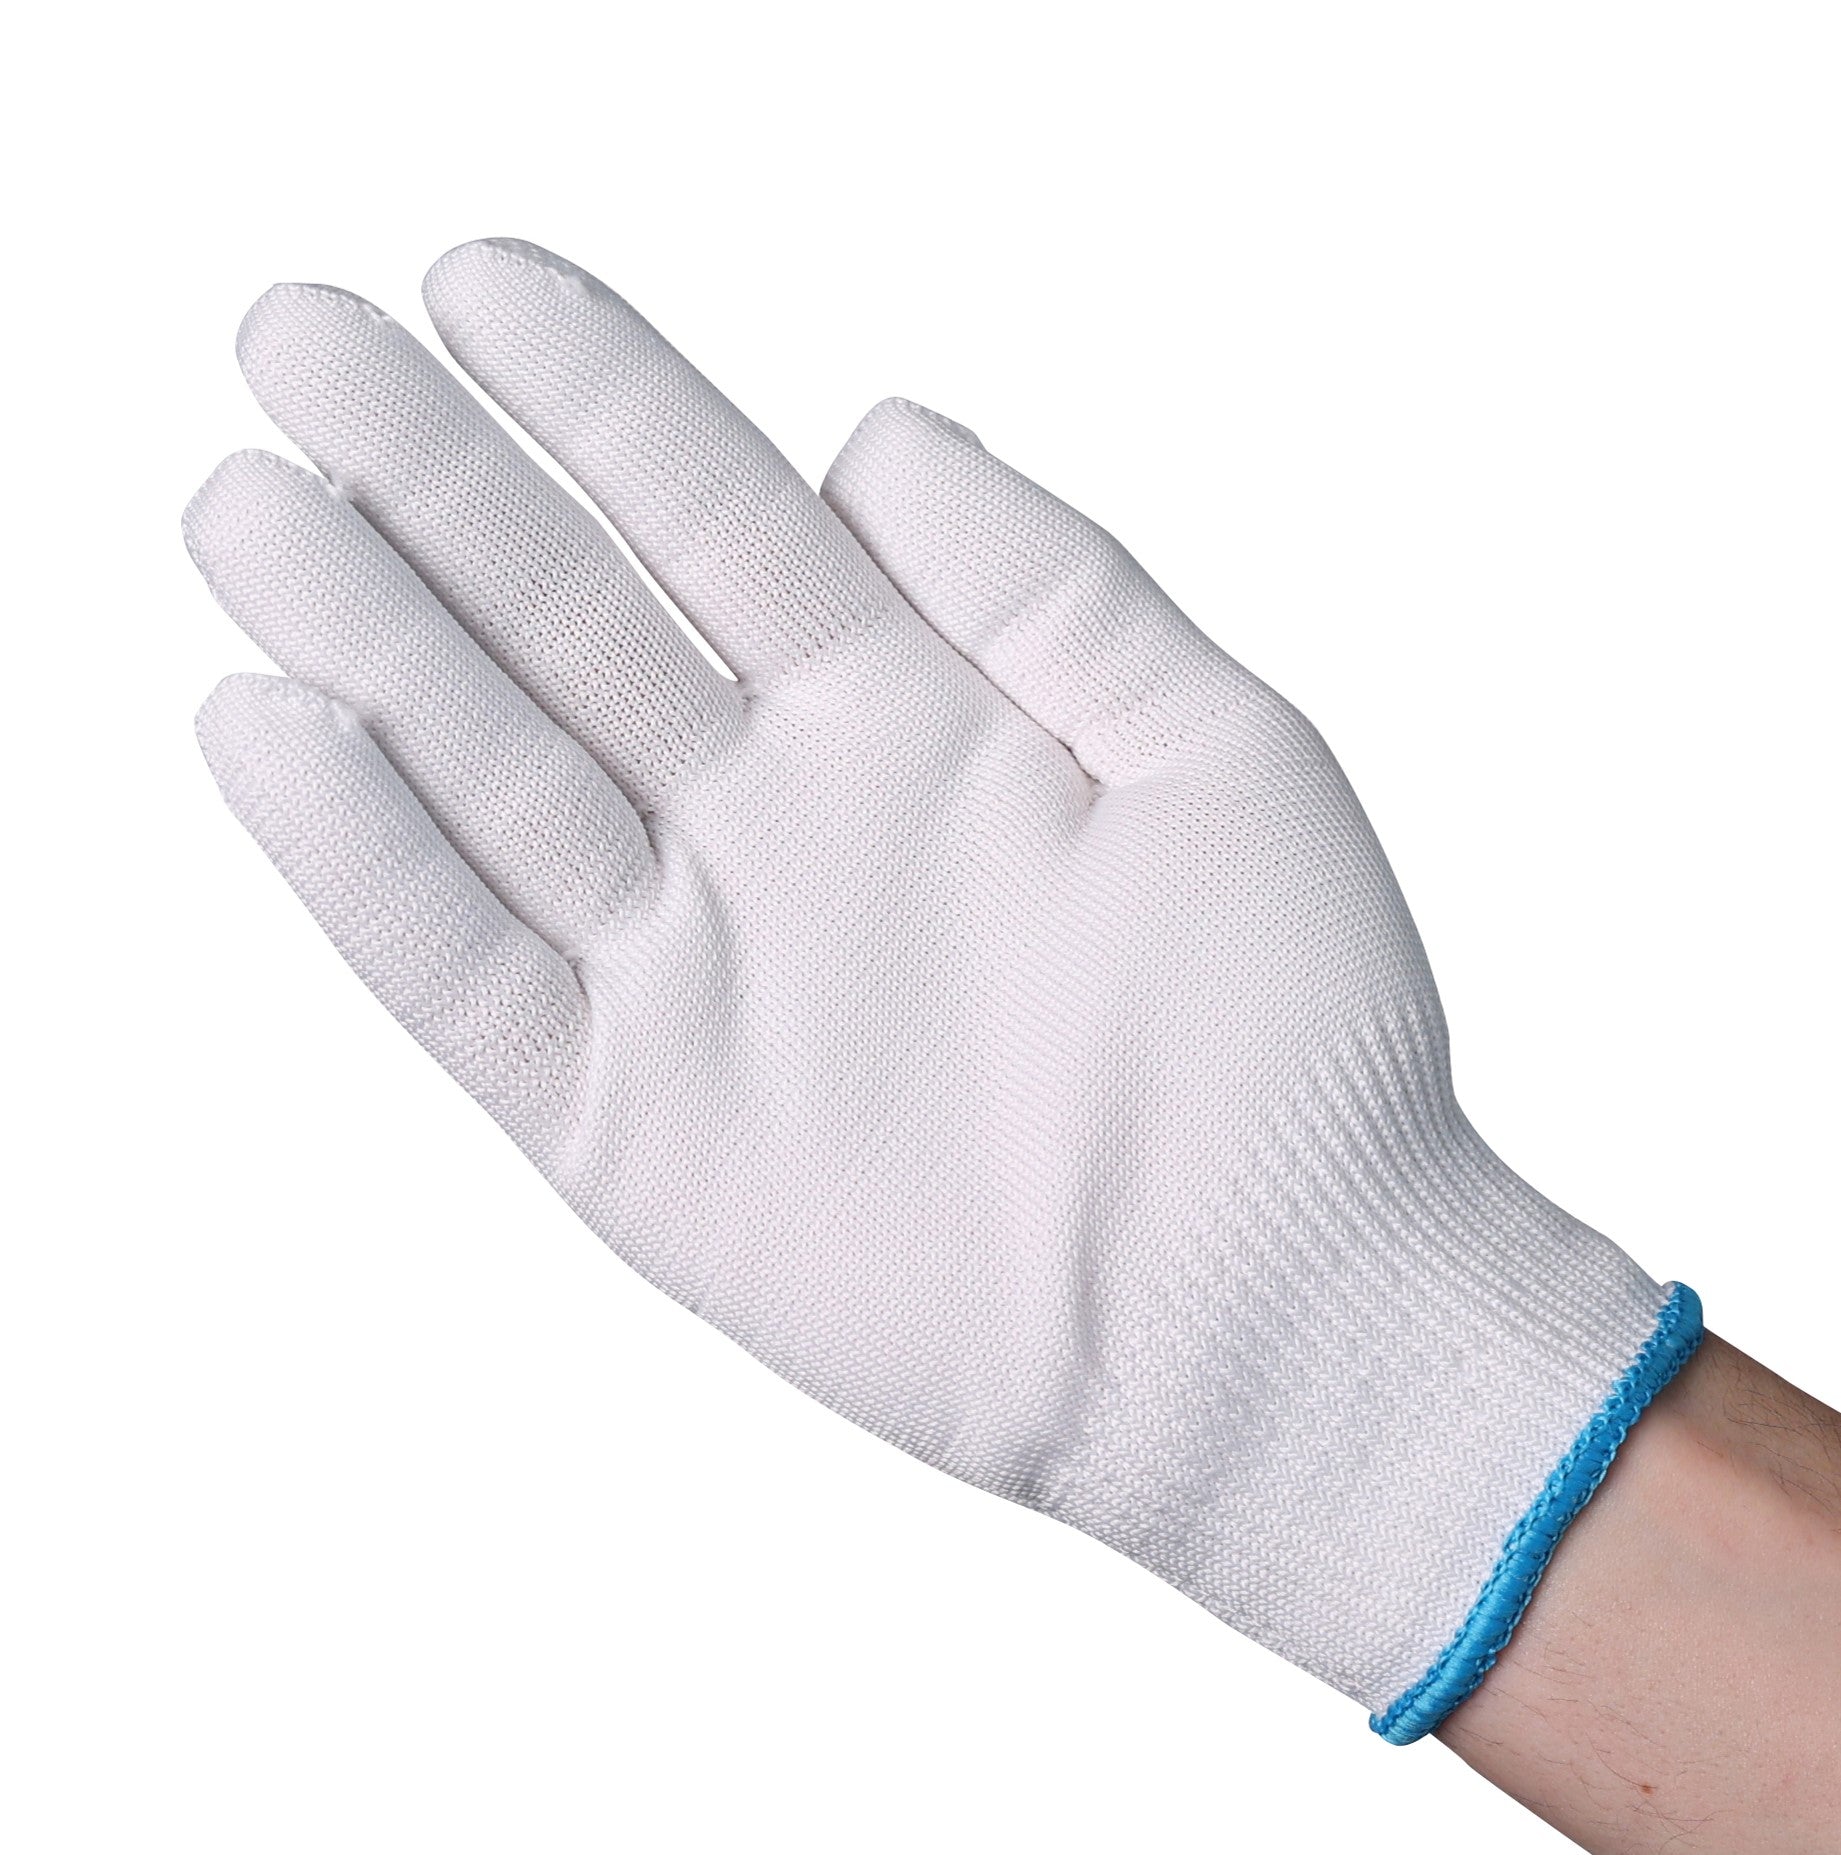 SKVG701LG Gloves